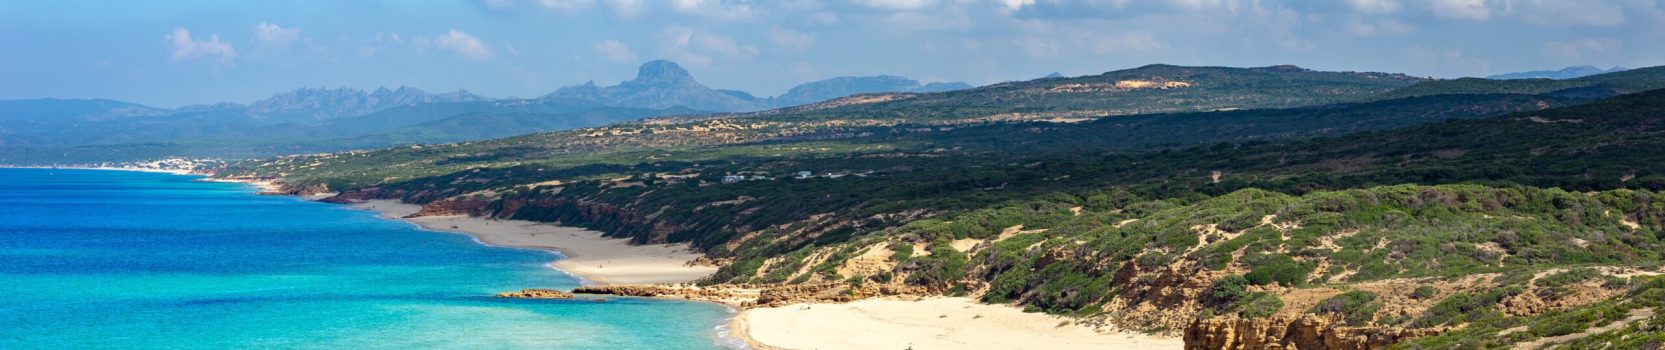 Sardegna, panorama della splendida e selvaggia costa di Scivu, a